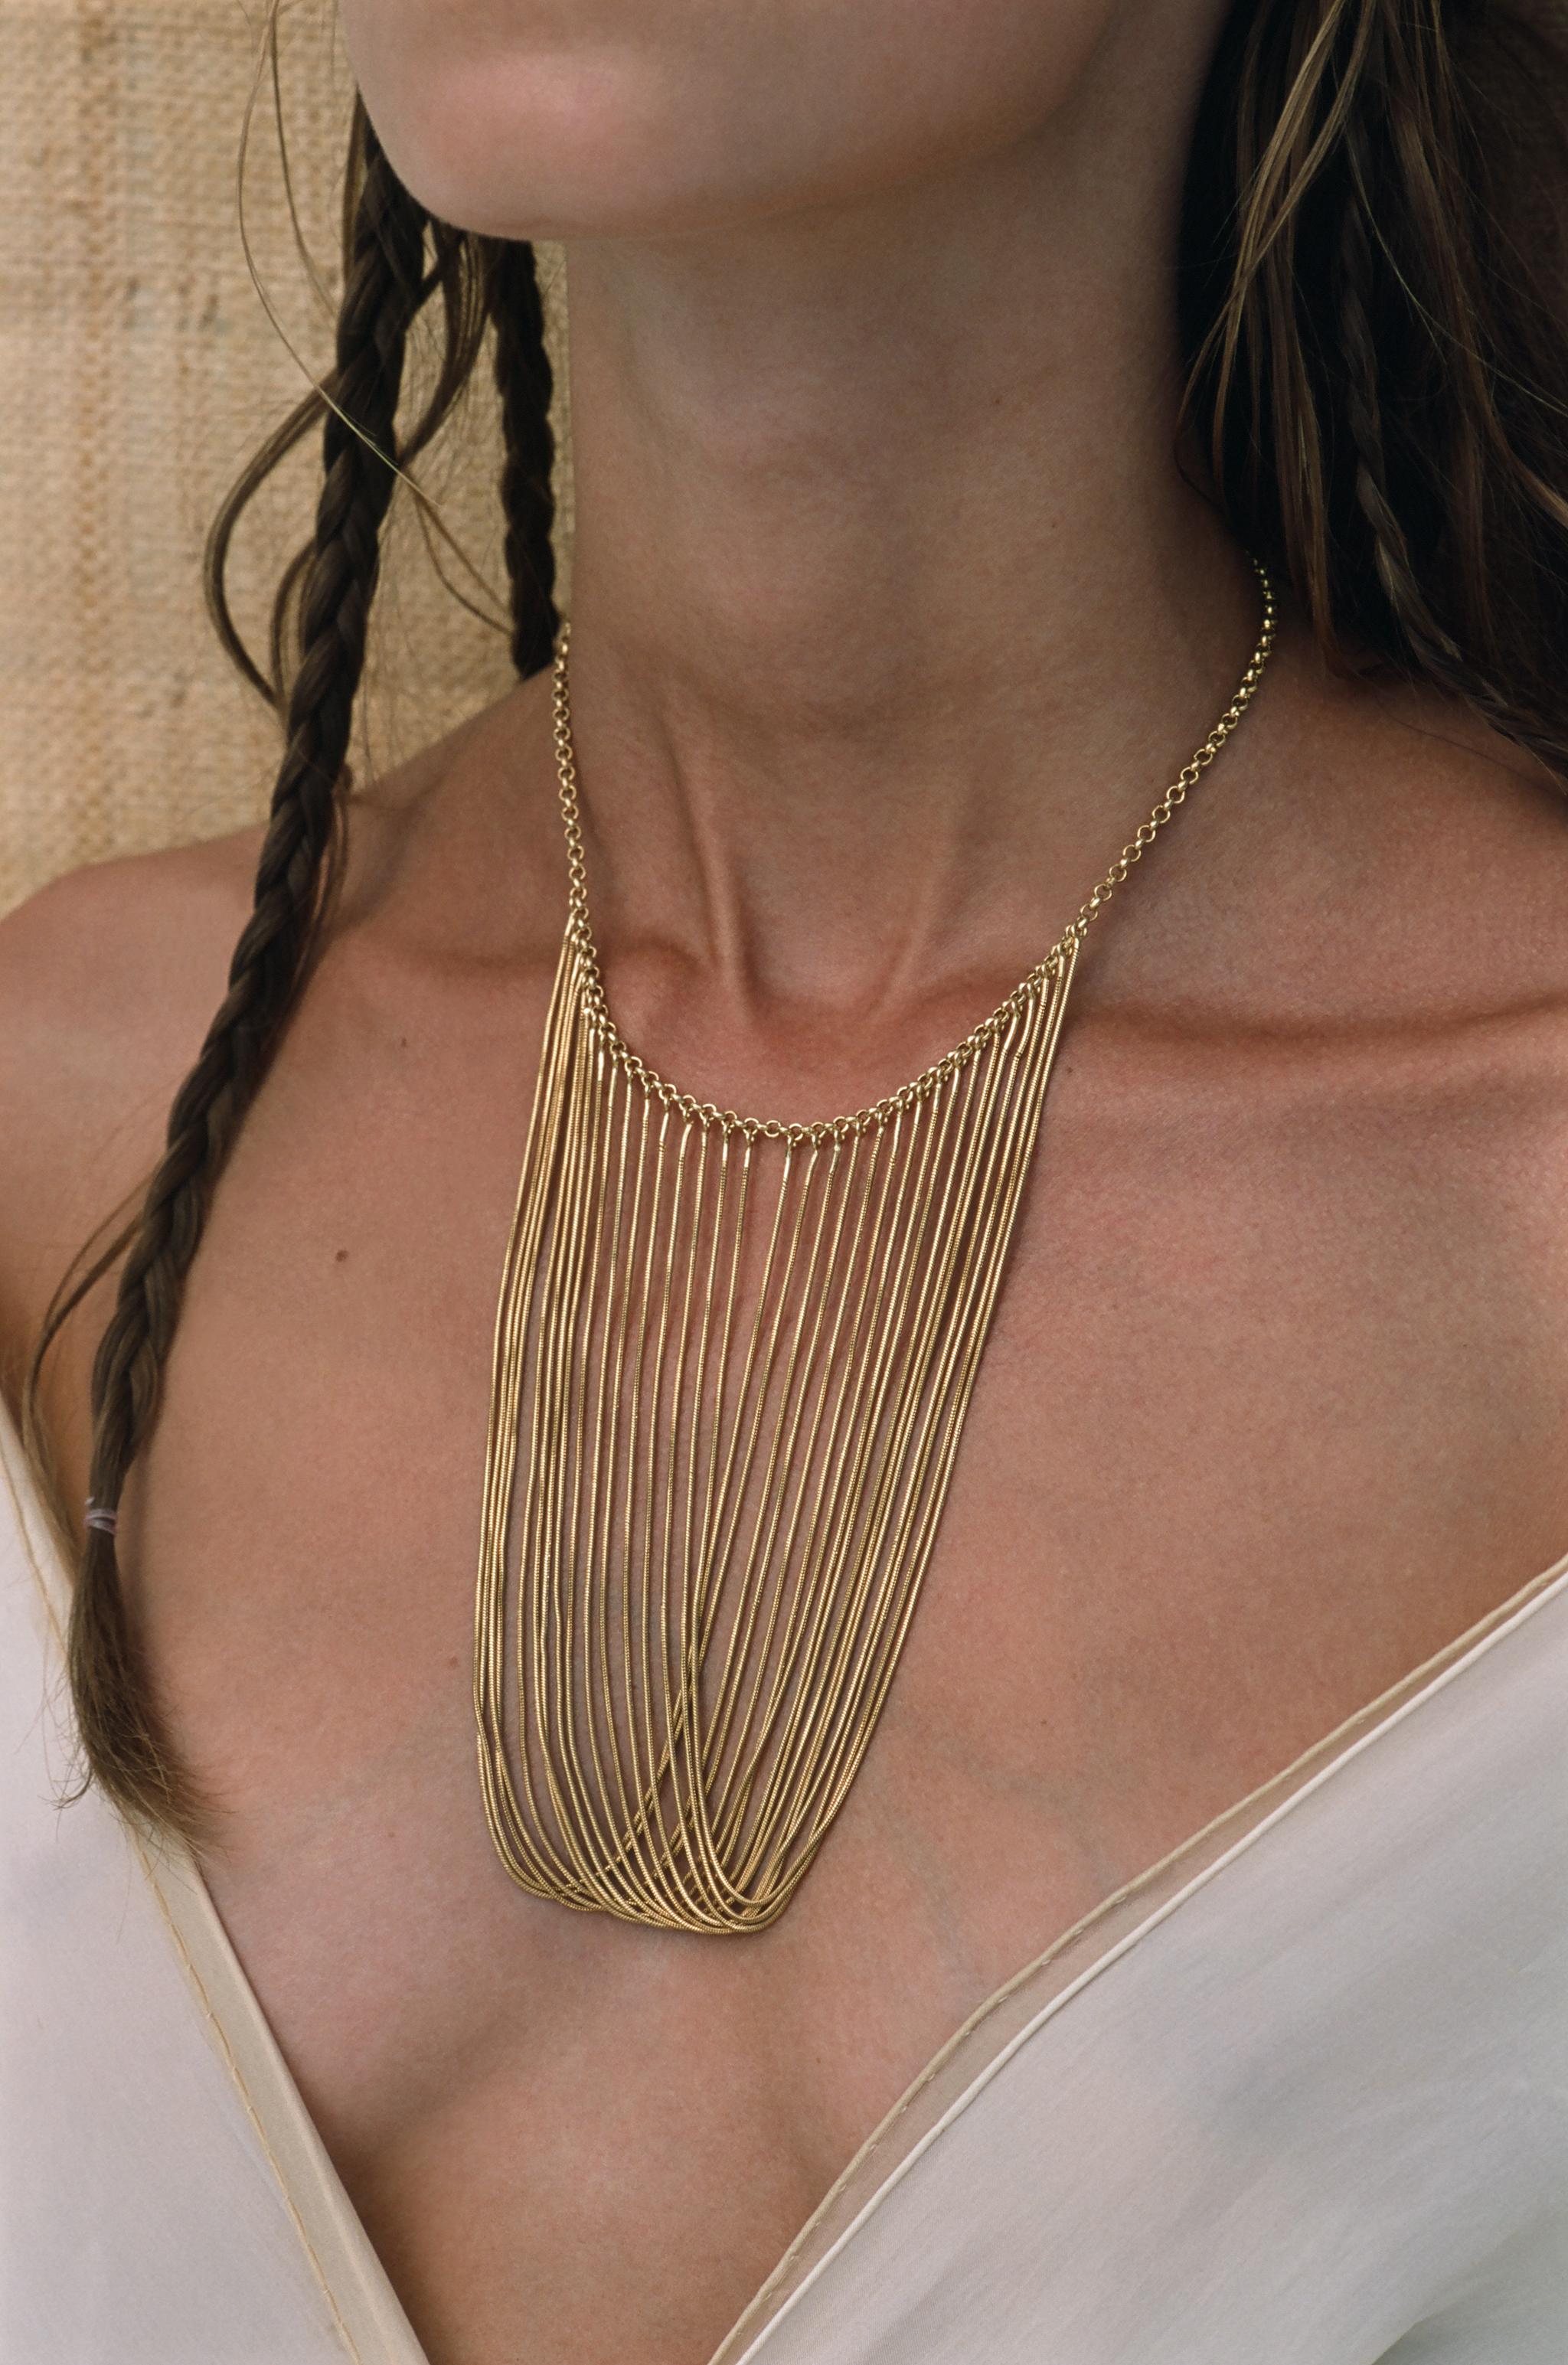 greek necklace